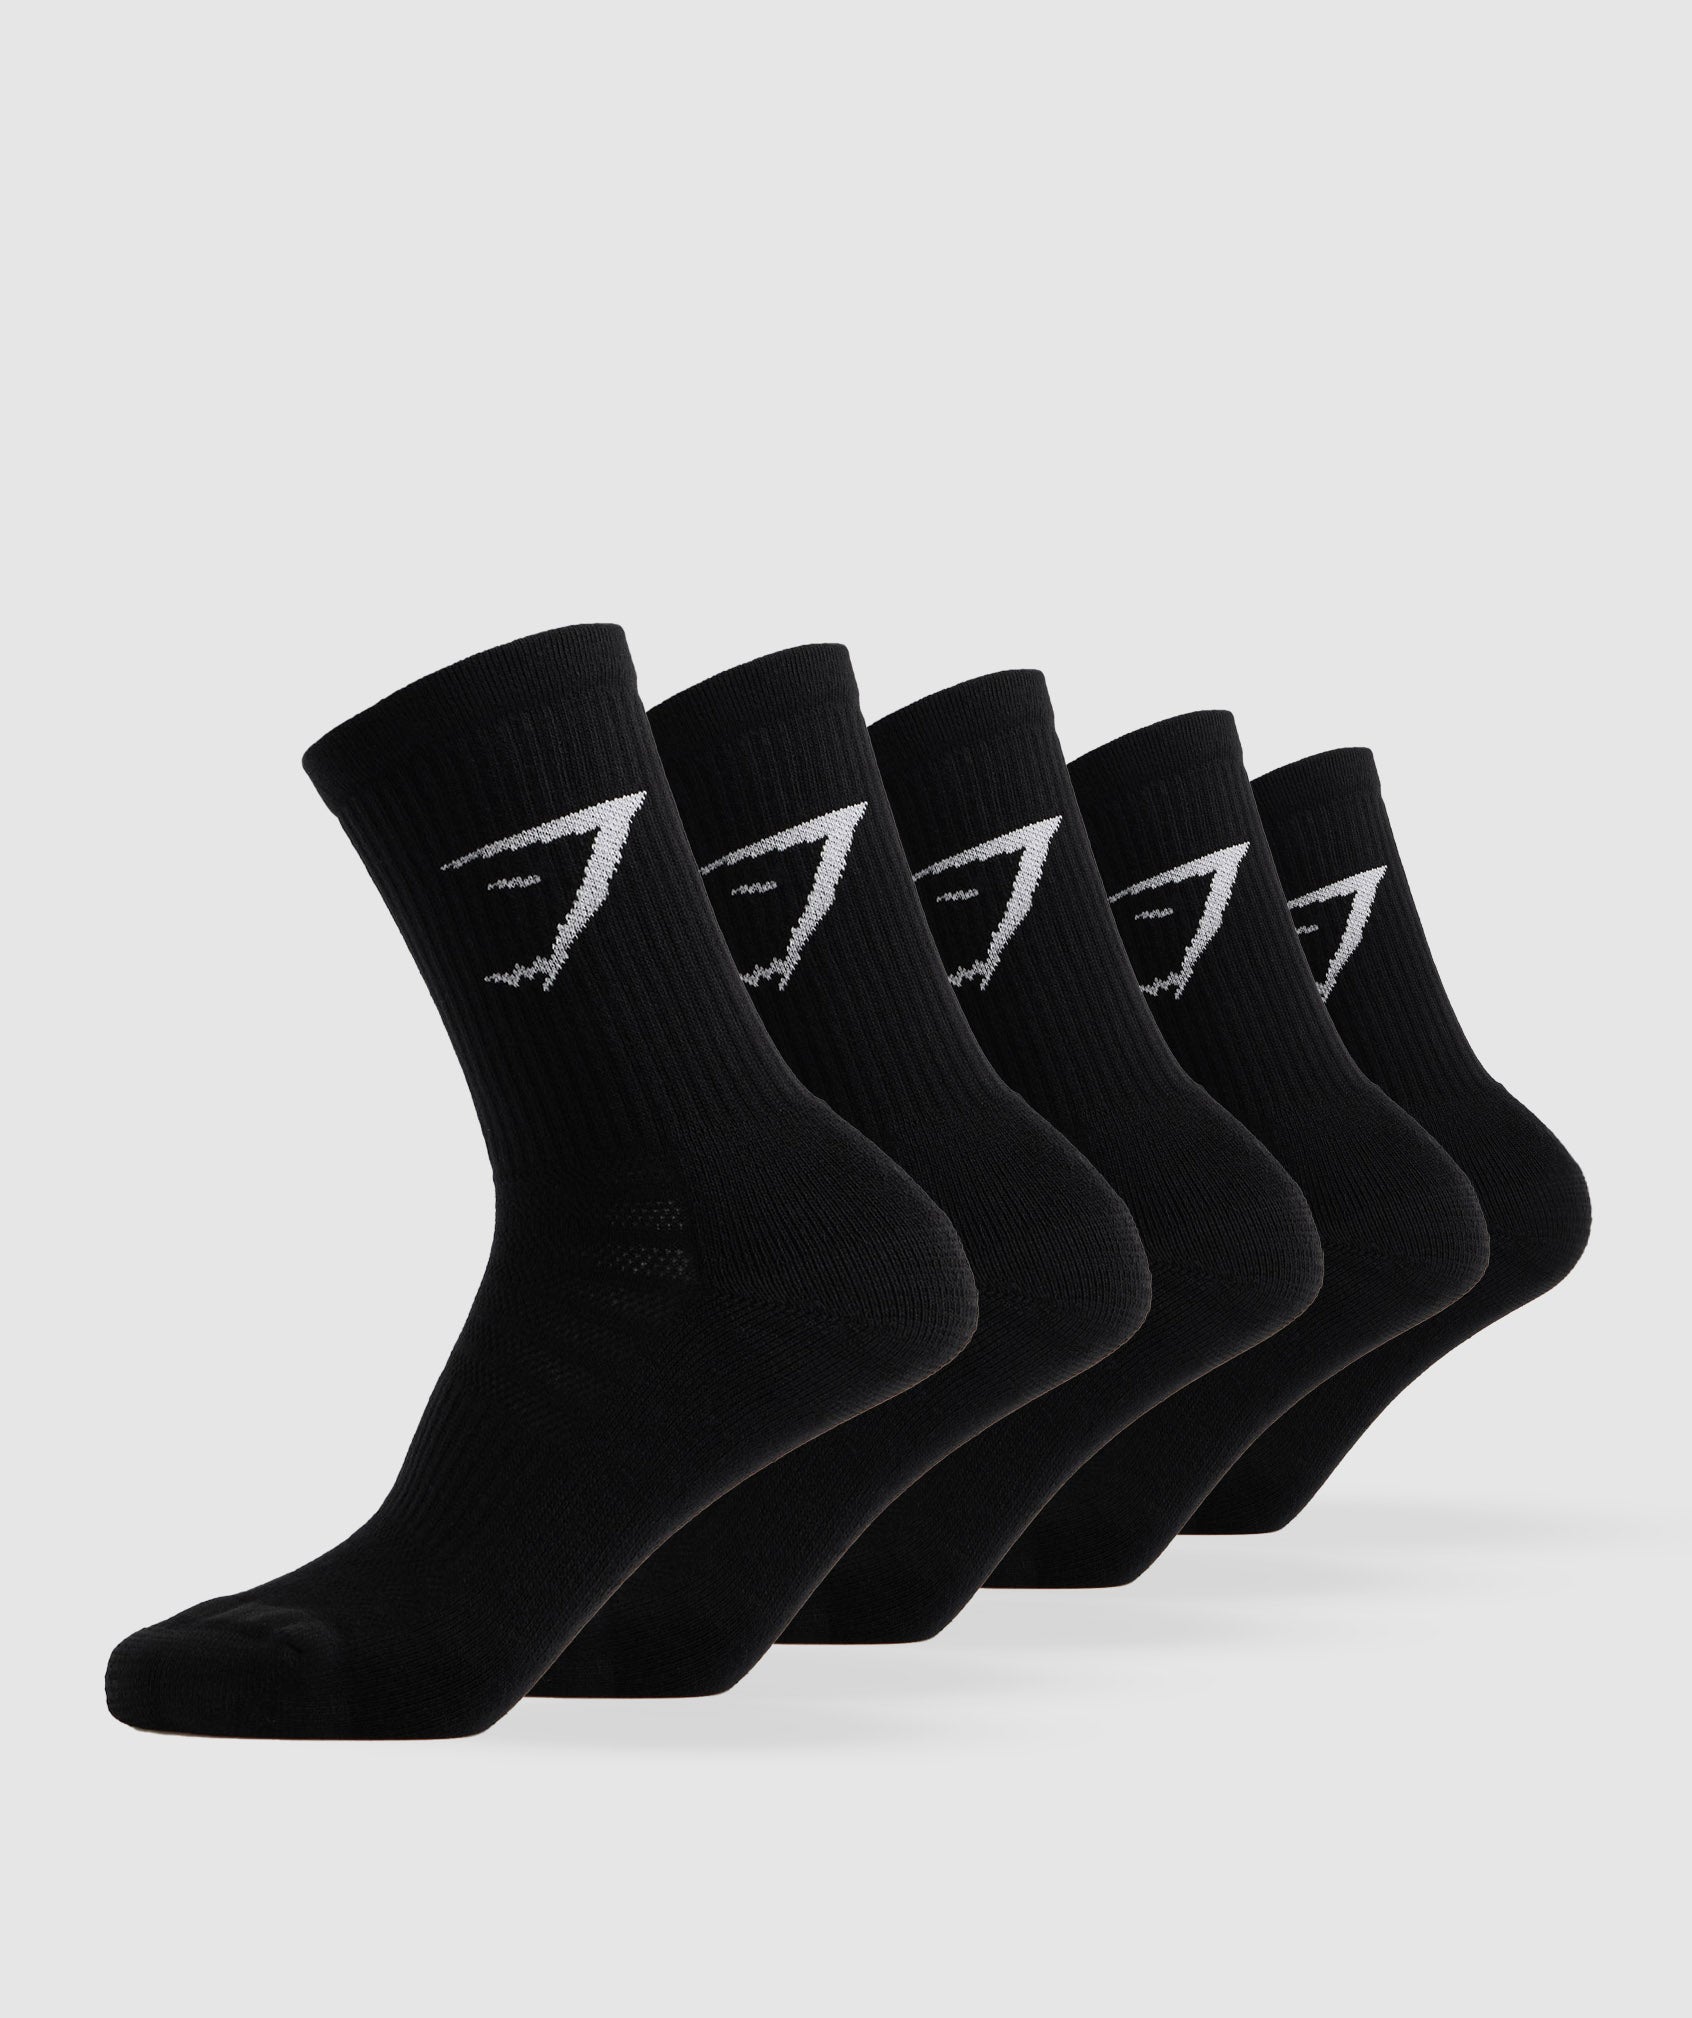 Gymshark Crew Socks 5pk - Black | Gymshark